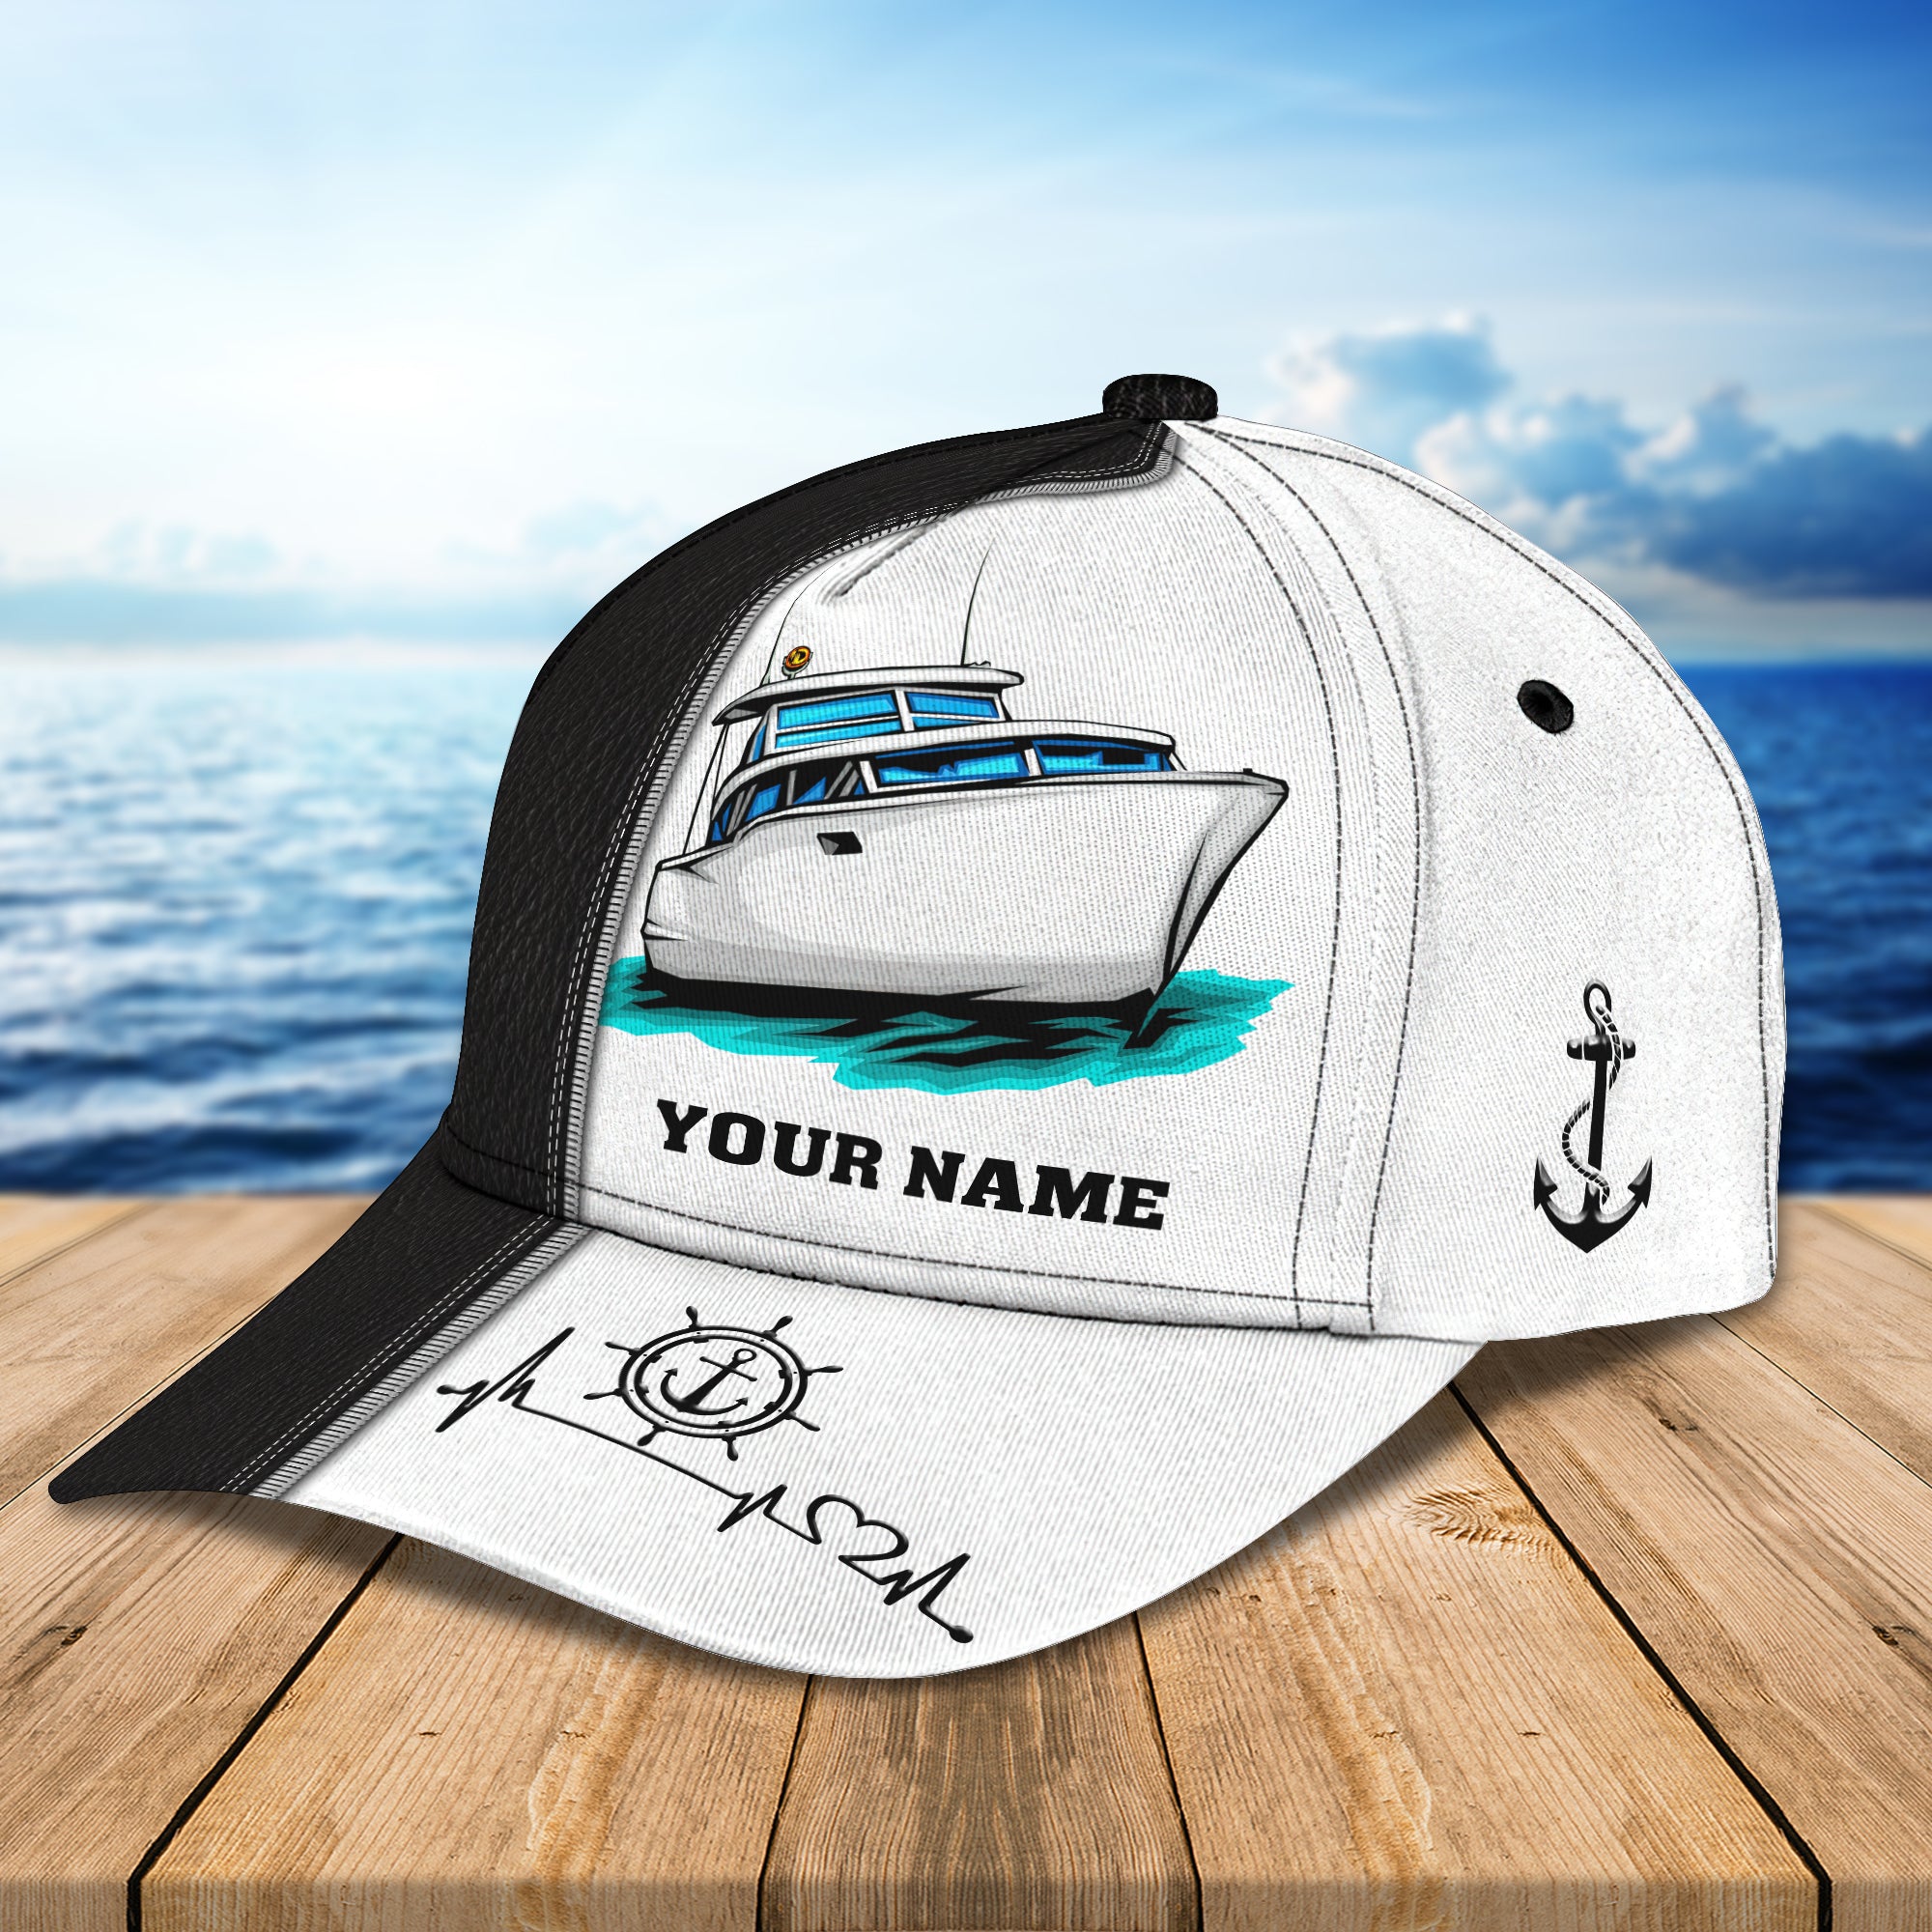 Boat - Personalized Name Cap - Mitru